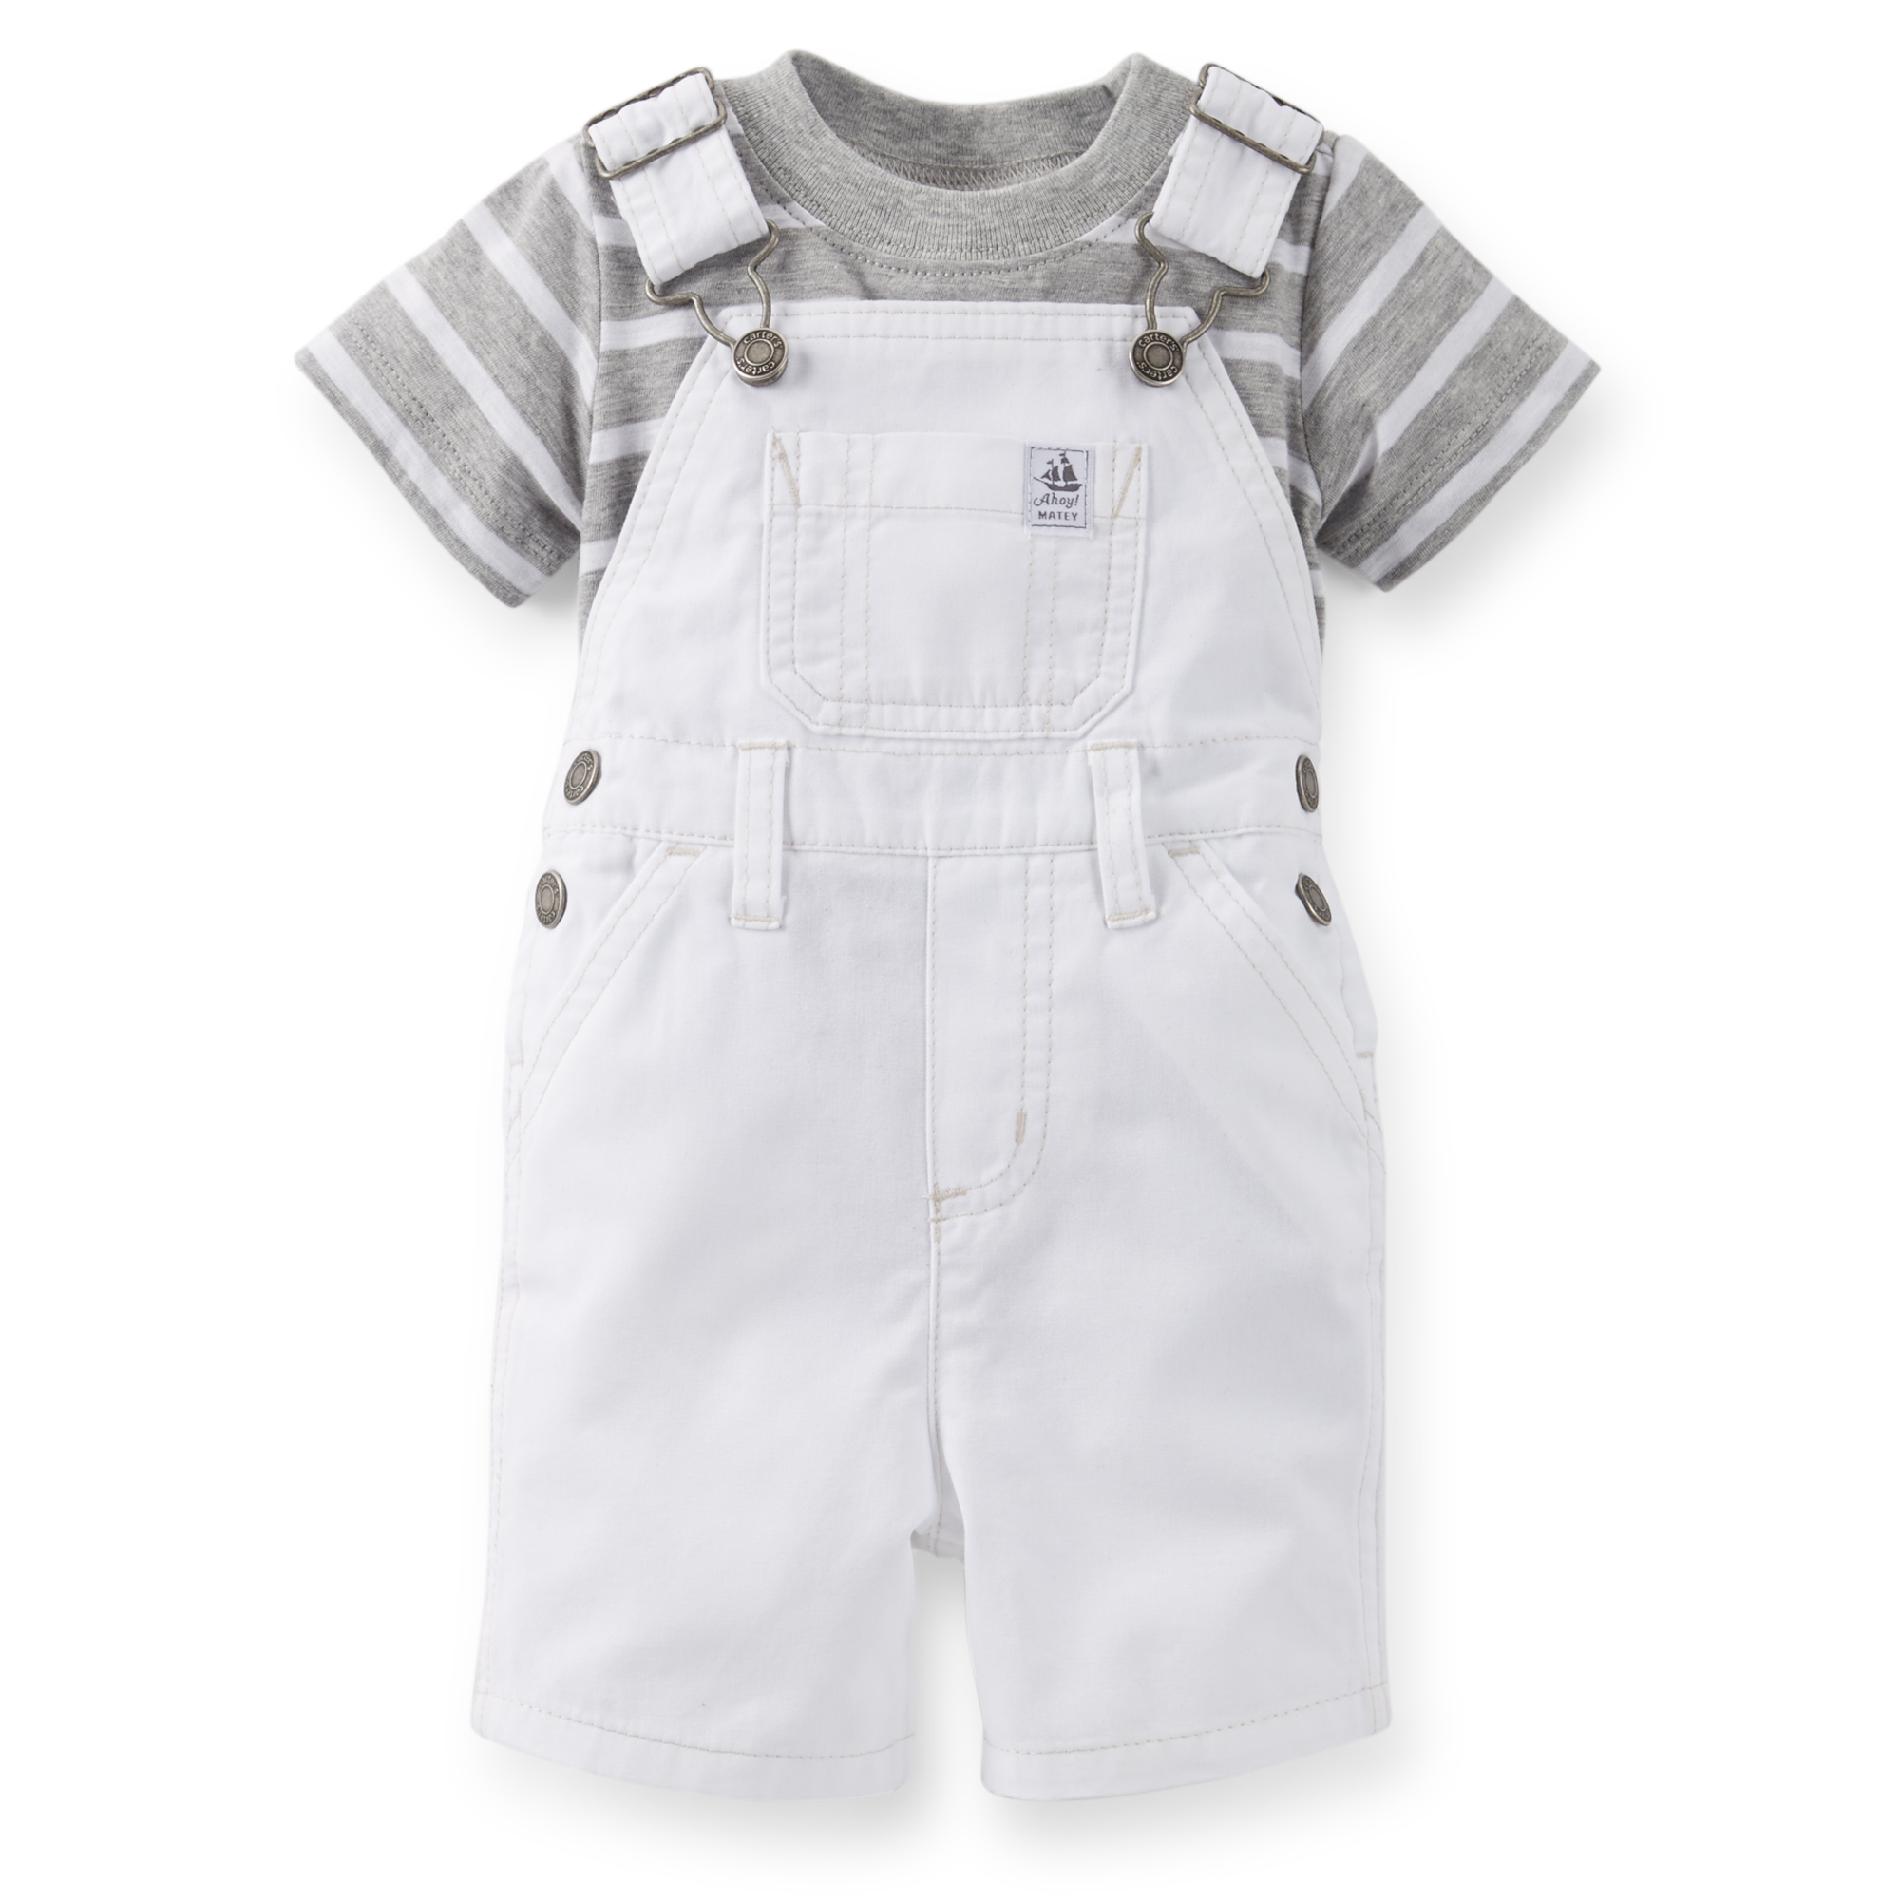 Carter's Newborn & Infant Boy's Overalls & T-Shirt